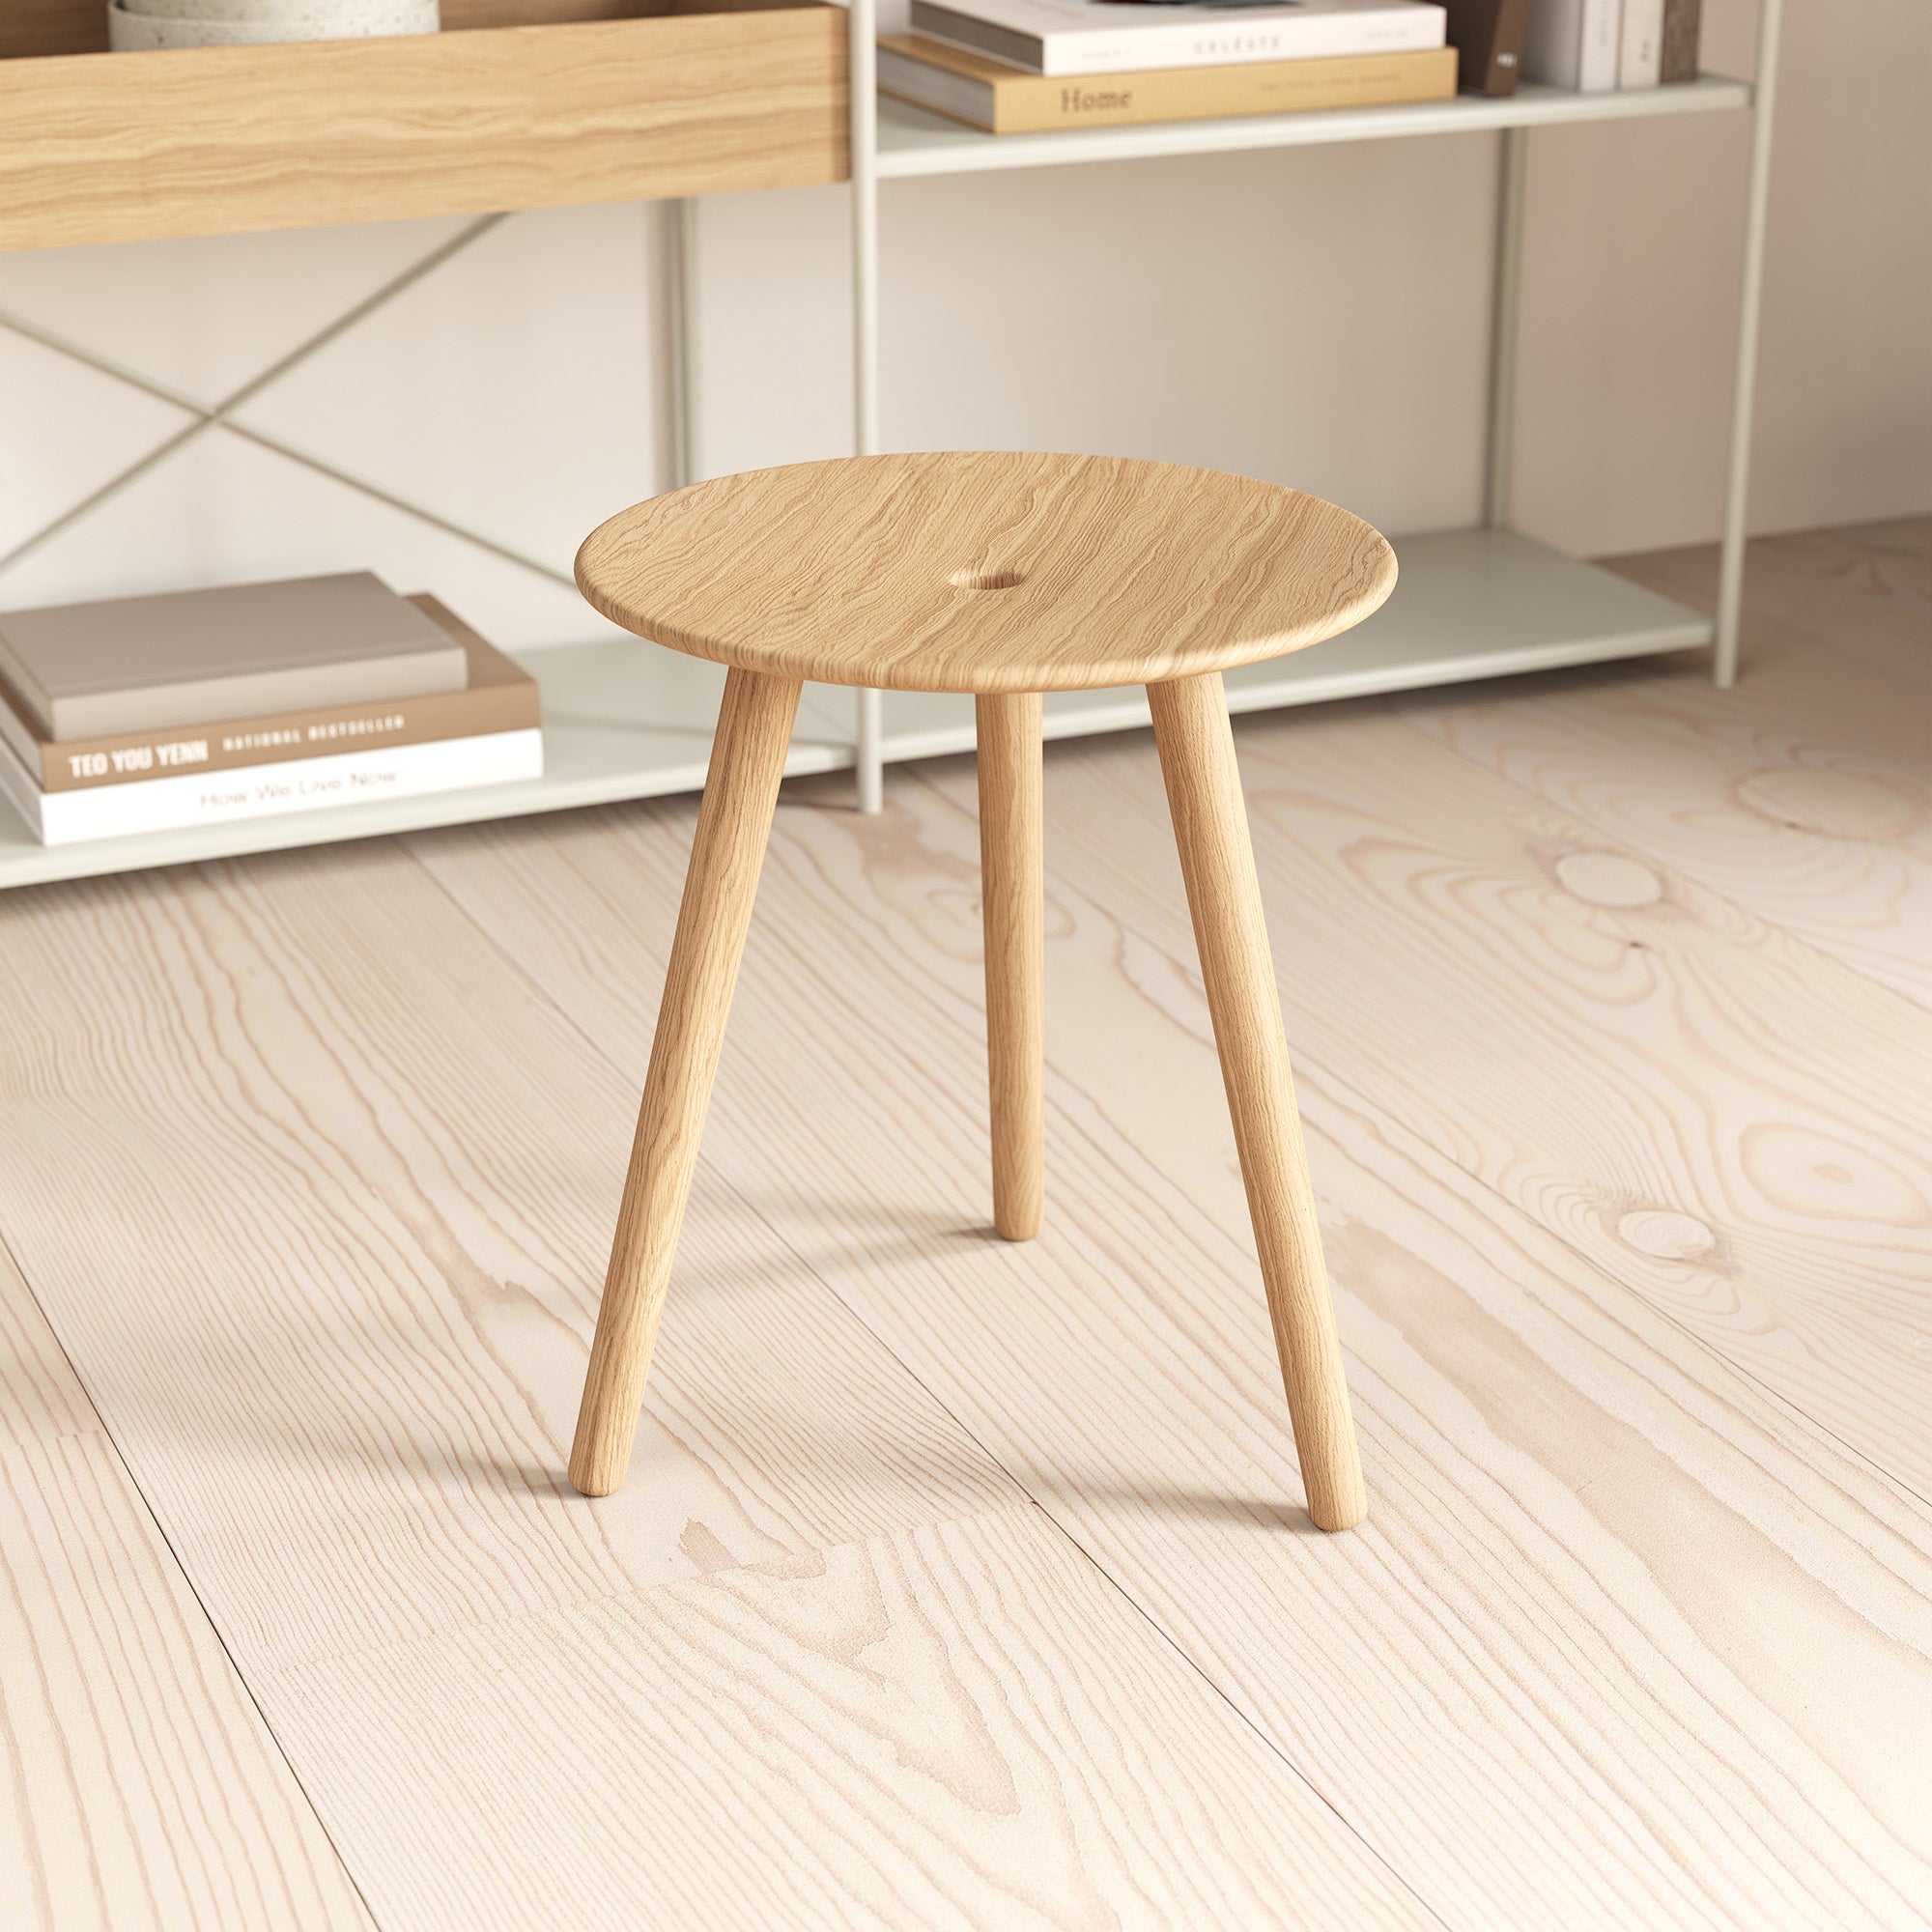 DI VOLO stool 45cm - natural oak